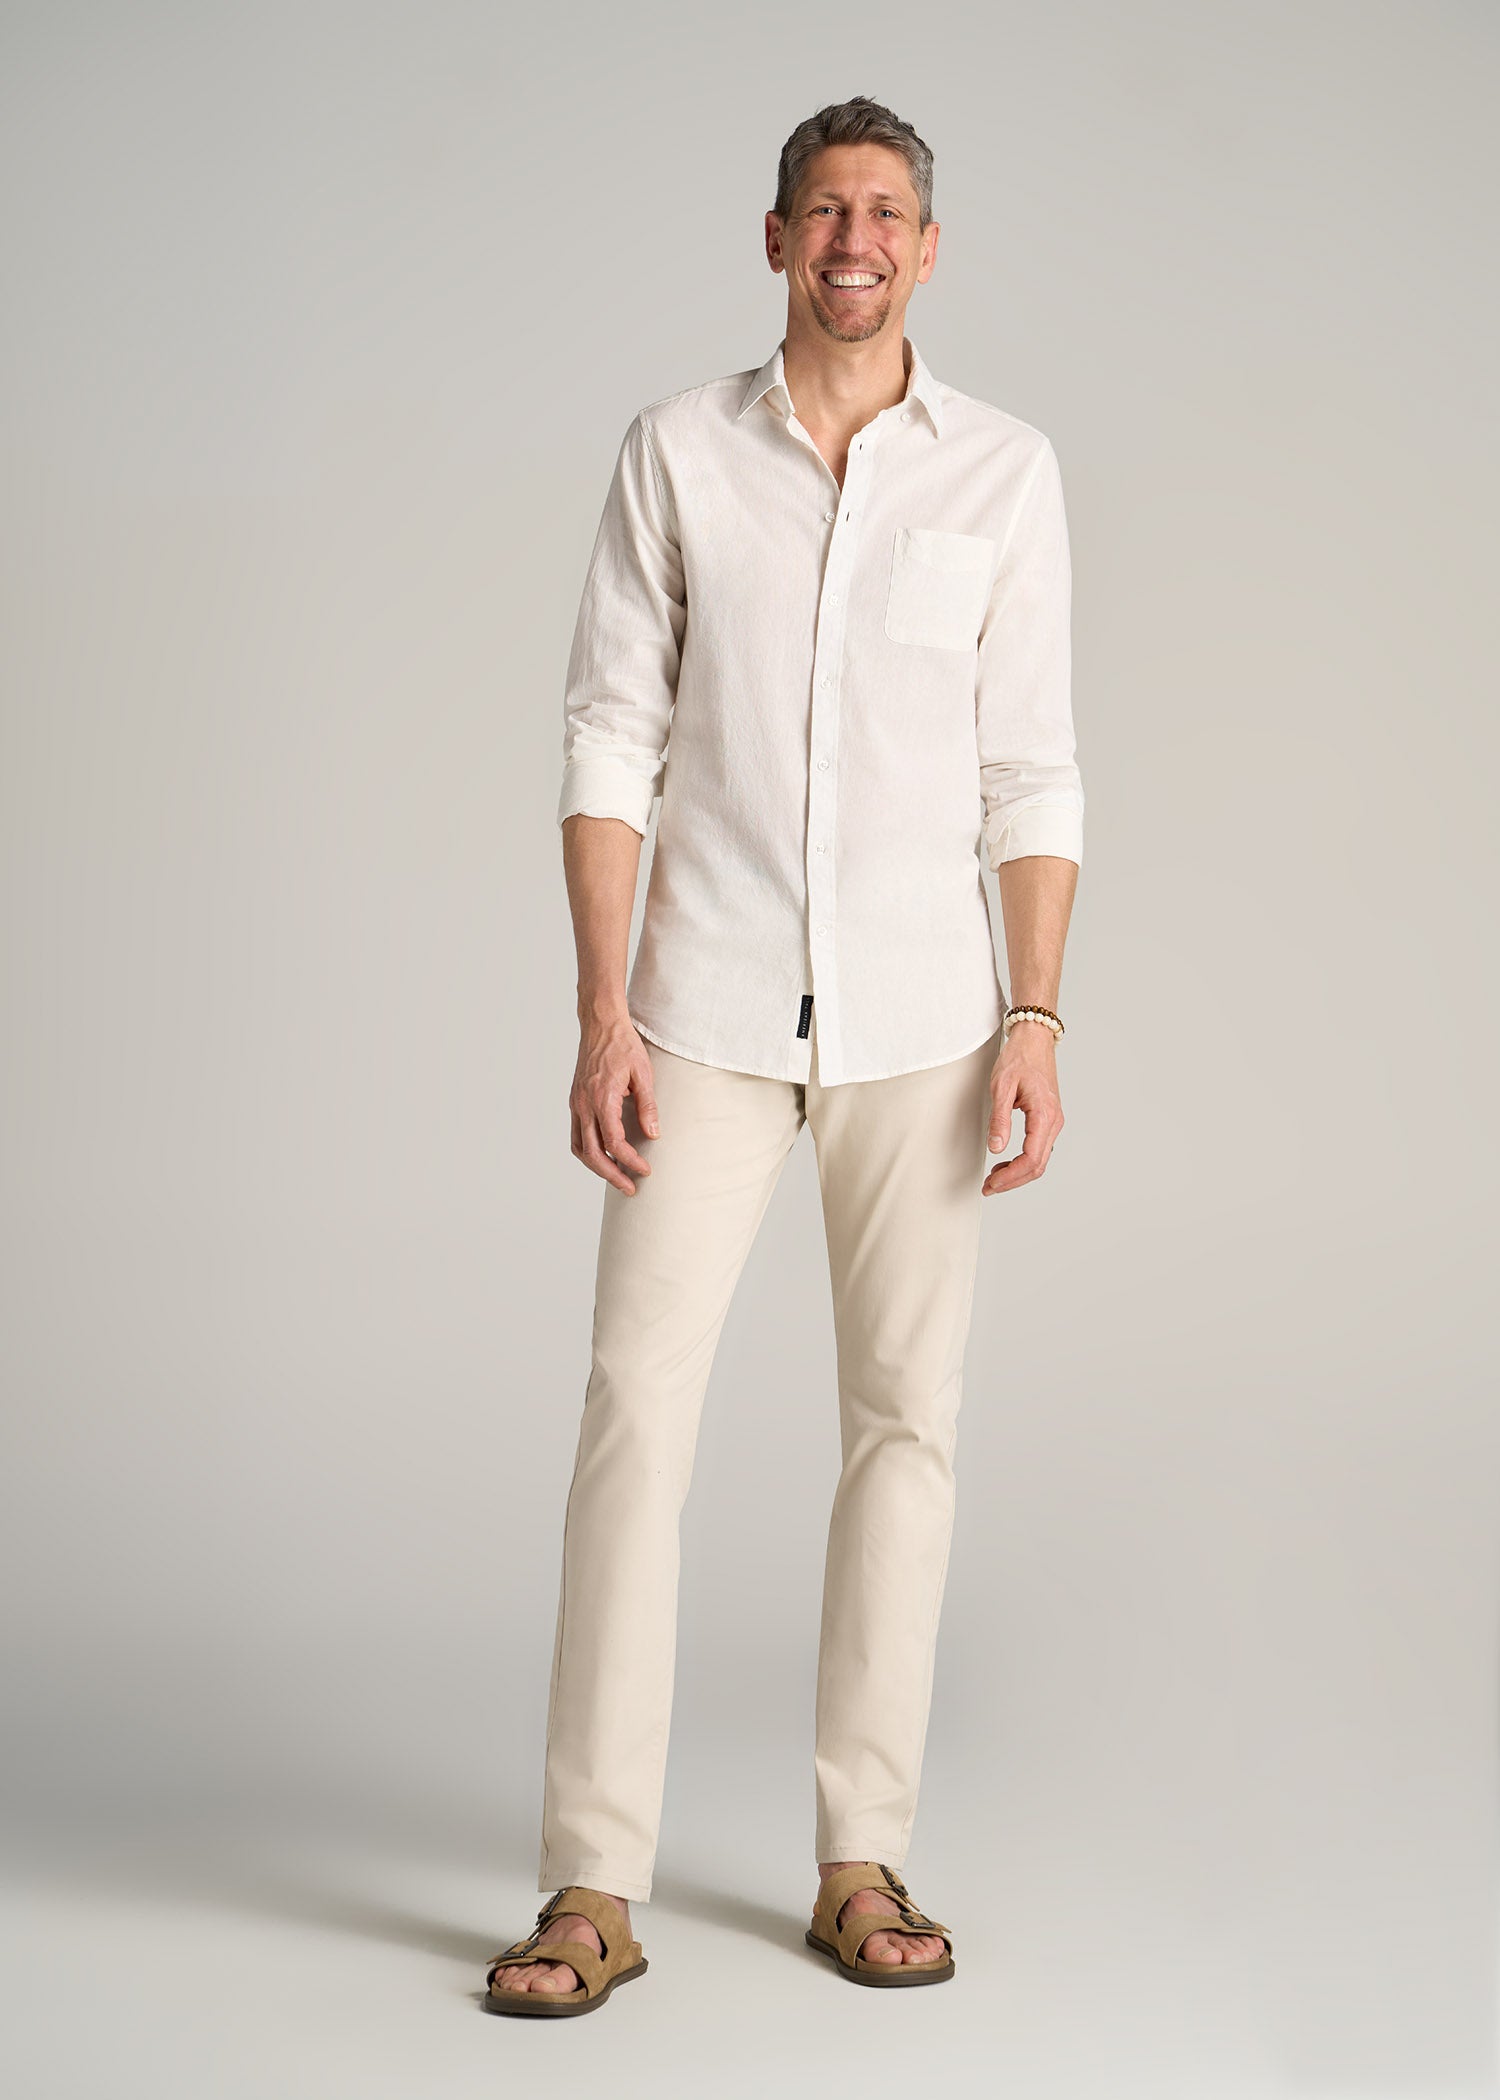 Linen Long Sleeve Shirt for Tall Men Bright White